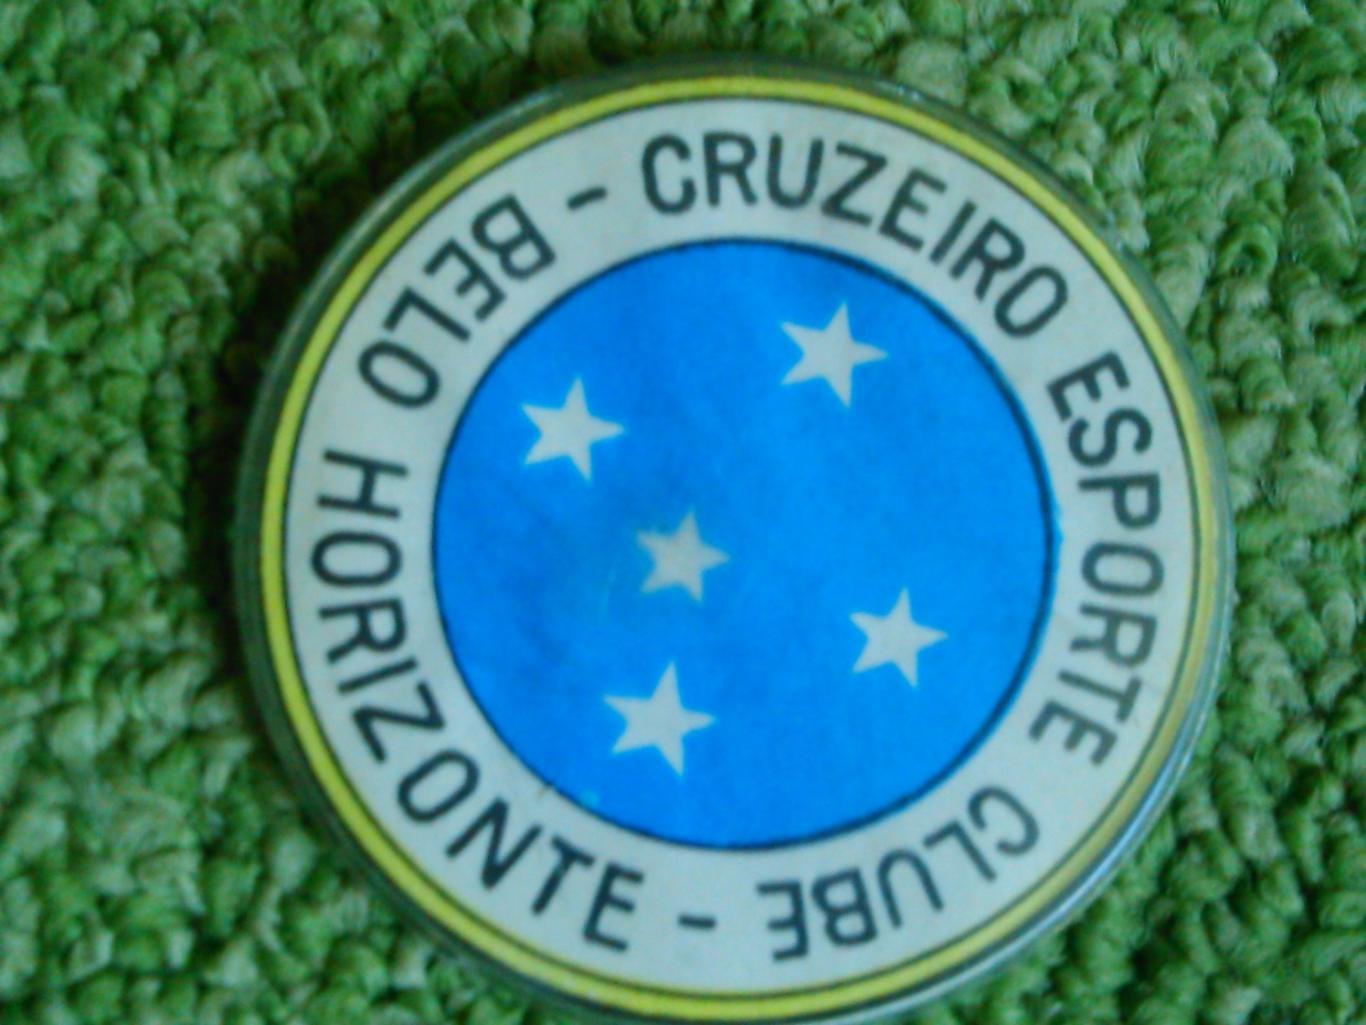 Футбольн. значок. CRUZEIRO ESPORTE CLUBE-BELO HORIZONTE./. Оптом скидки до 45%!